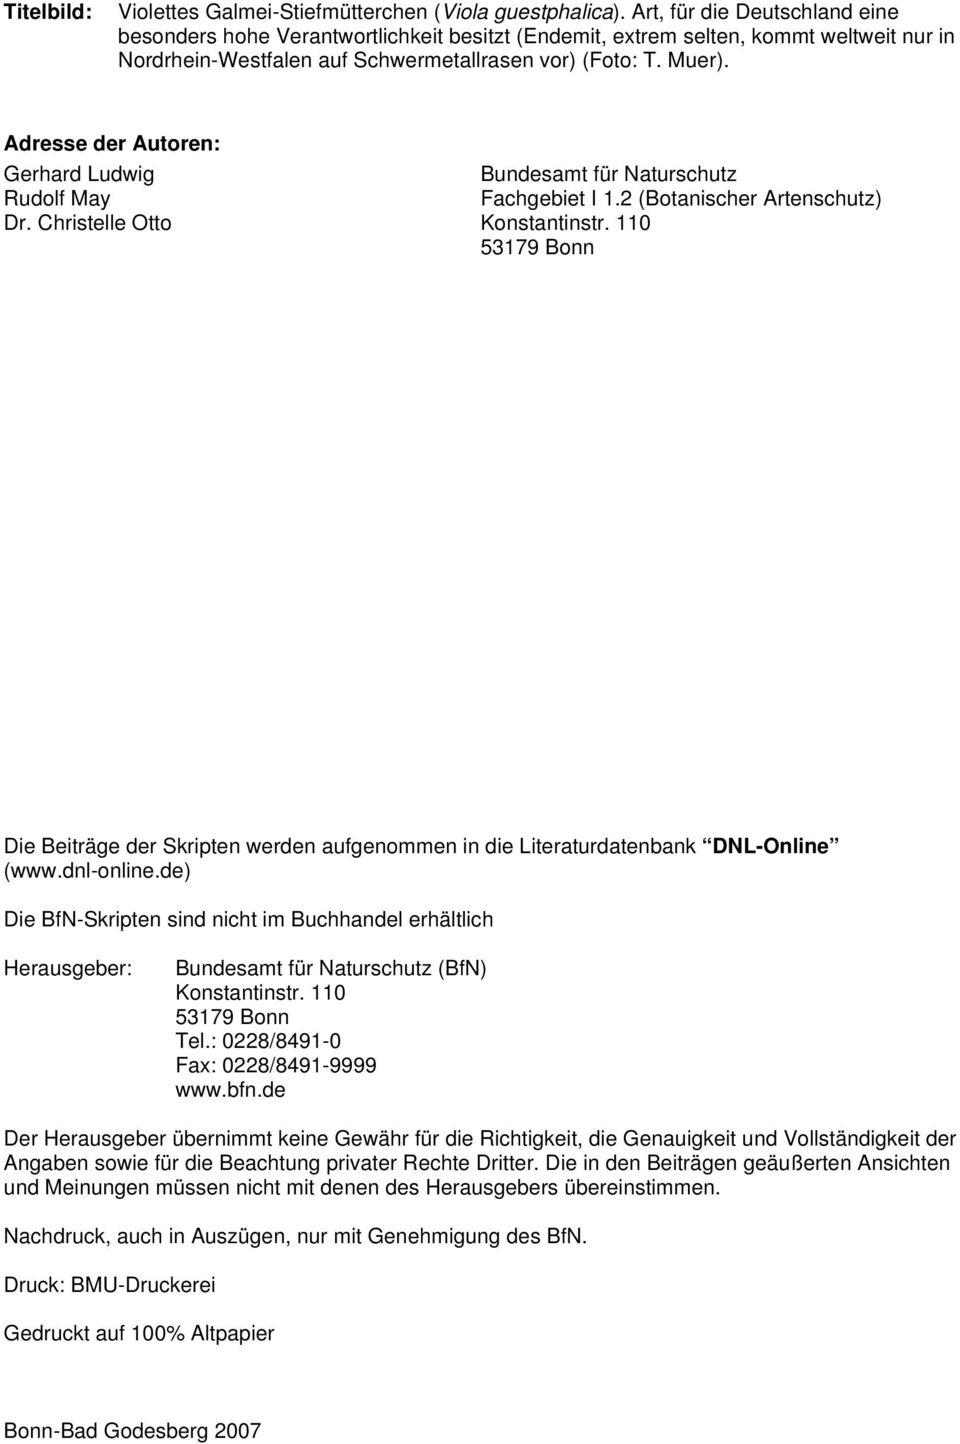 Adresse der Autoren: Gerhard Ludwig Bundesamt für Naturschutz Rudolf May Fachgebiet I 1.2 (Botanischer Artenschutz) Dr. Christelle Otto Konstantinstr.